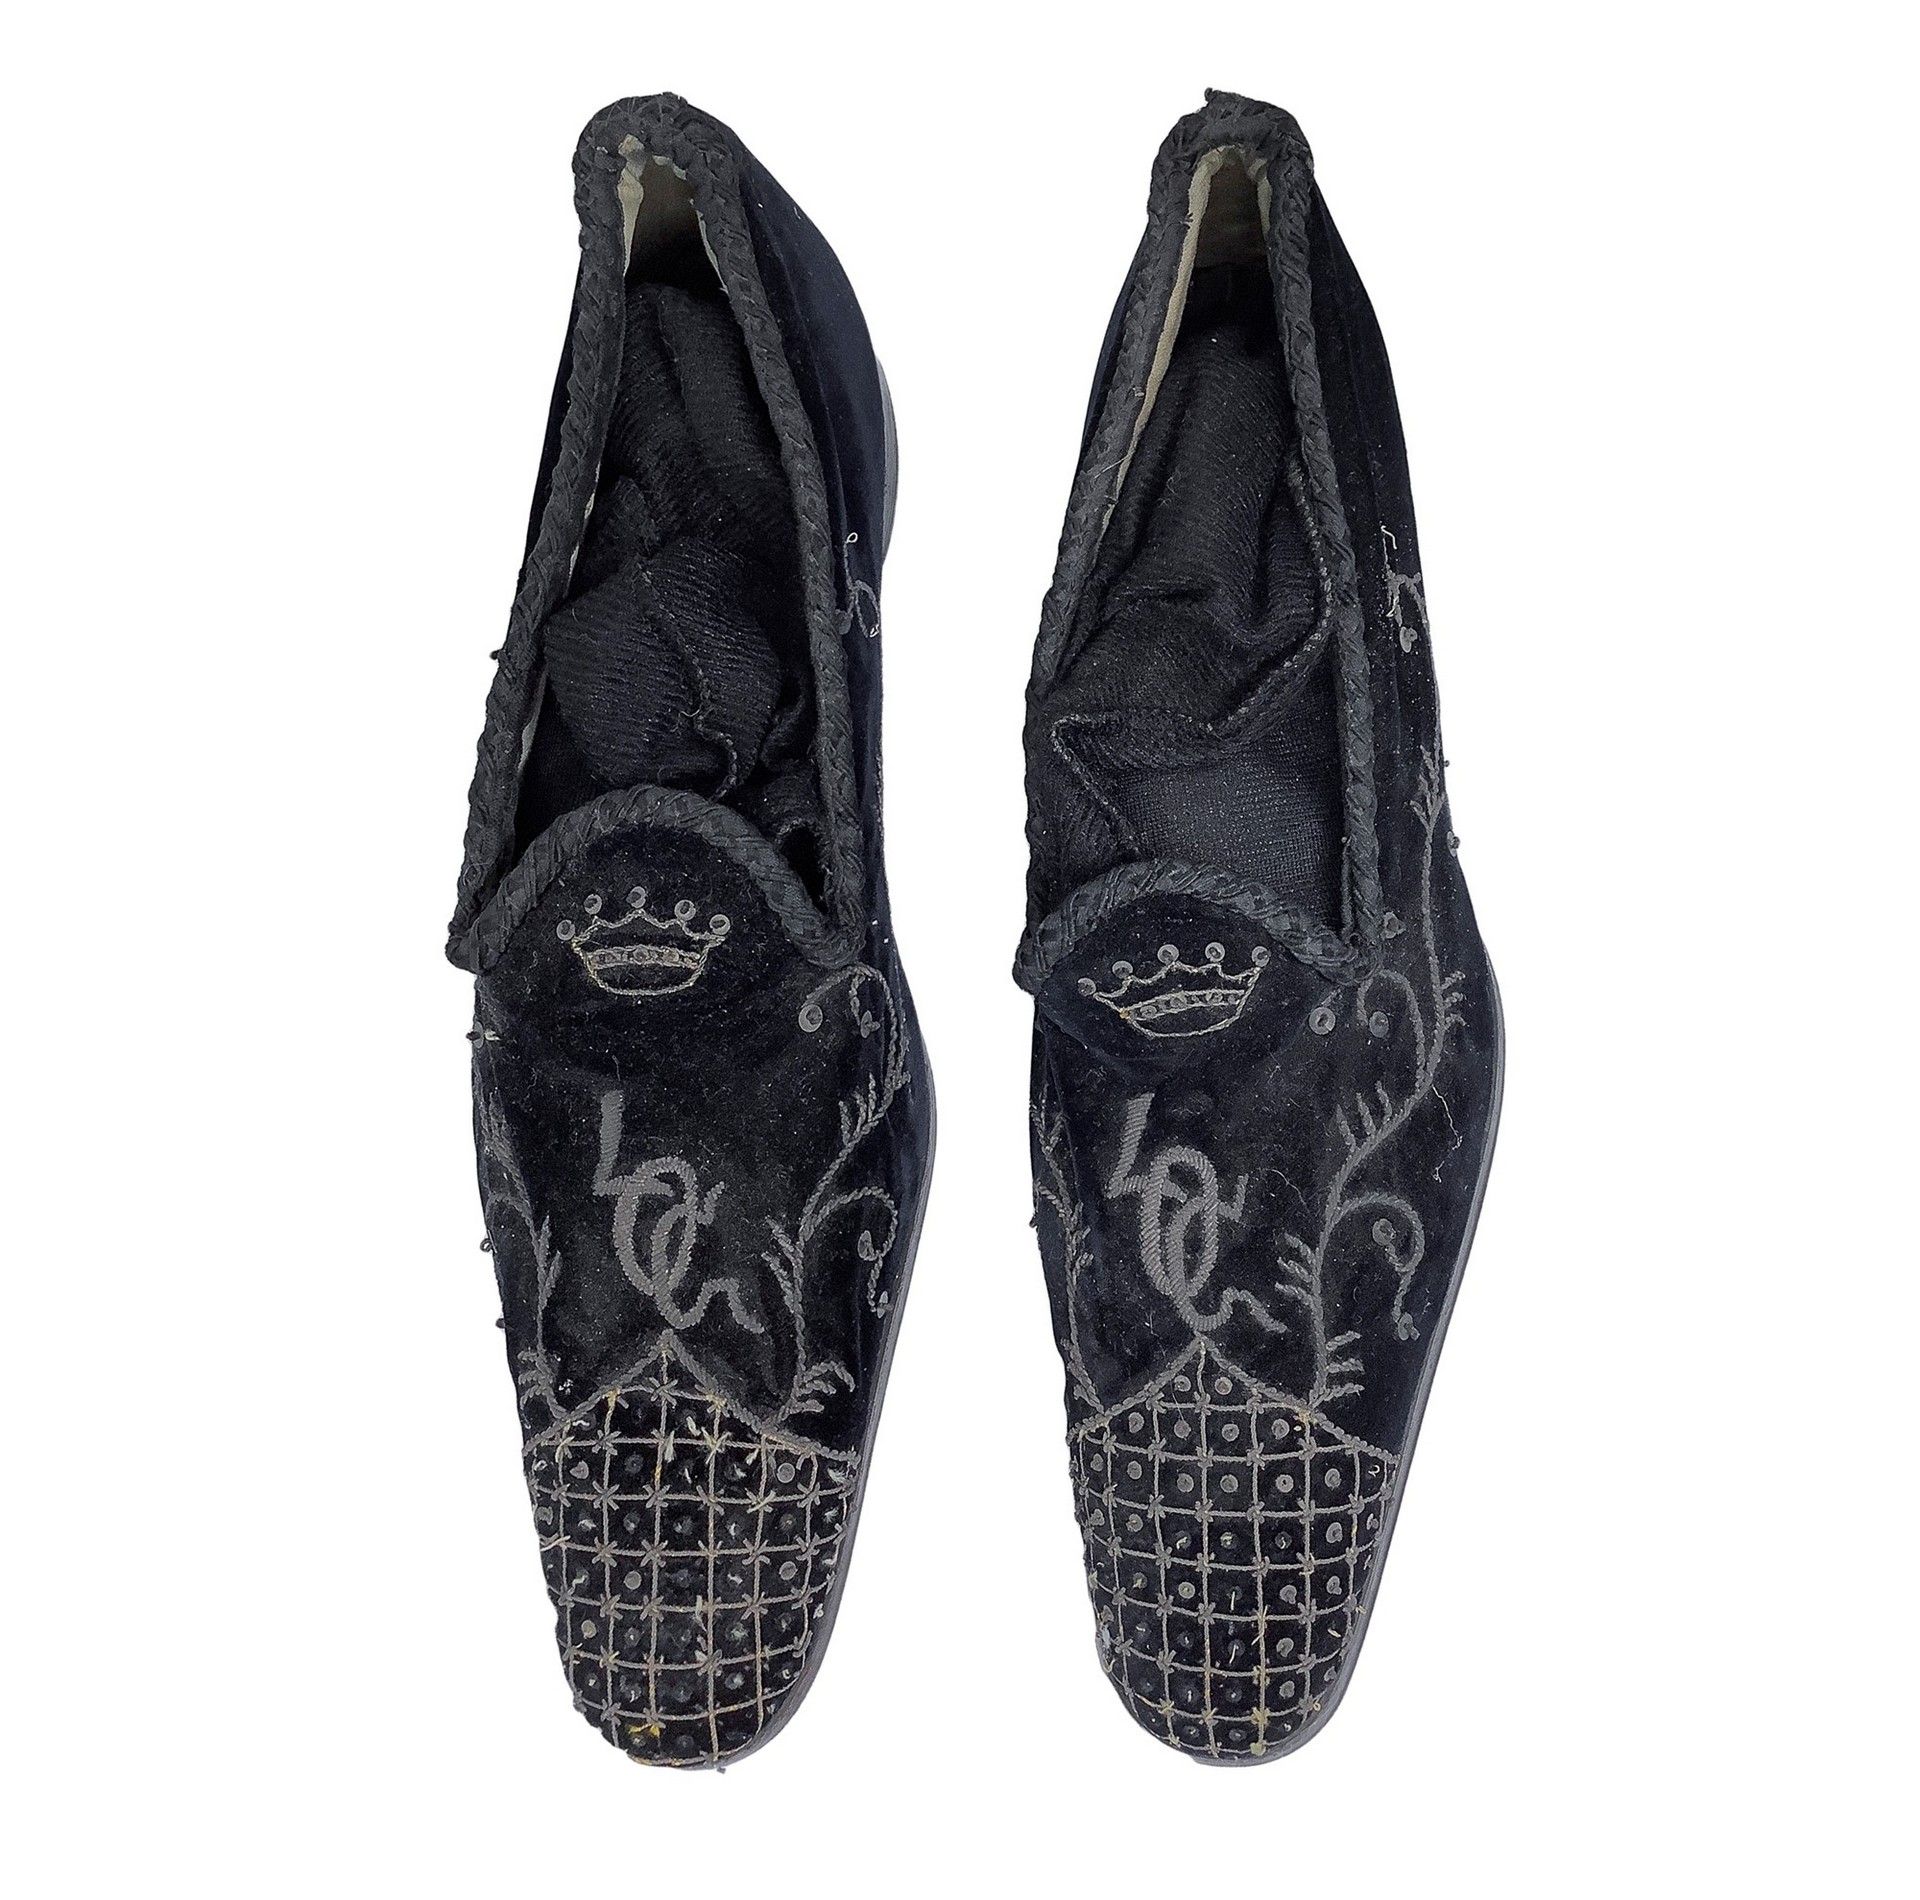 Null Zapatillas vintage , Zapatos nobles bordados de principios del siglo XIX